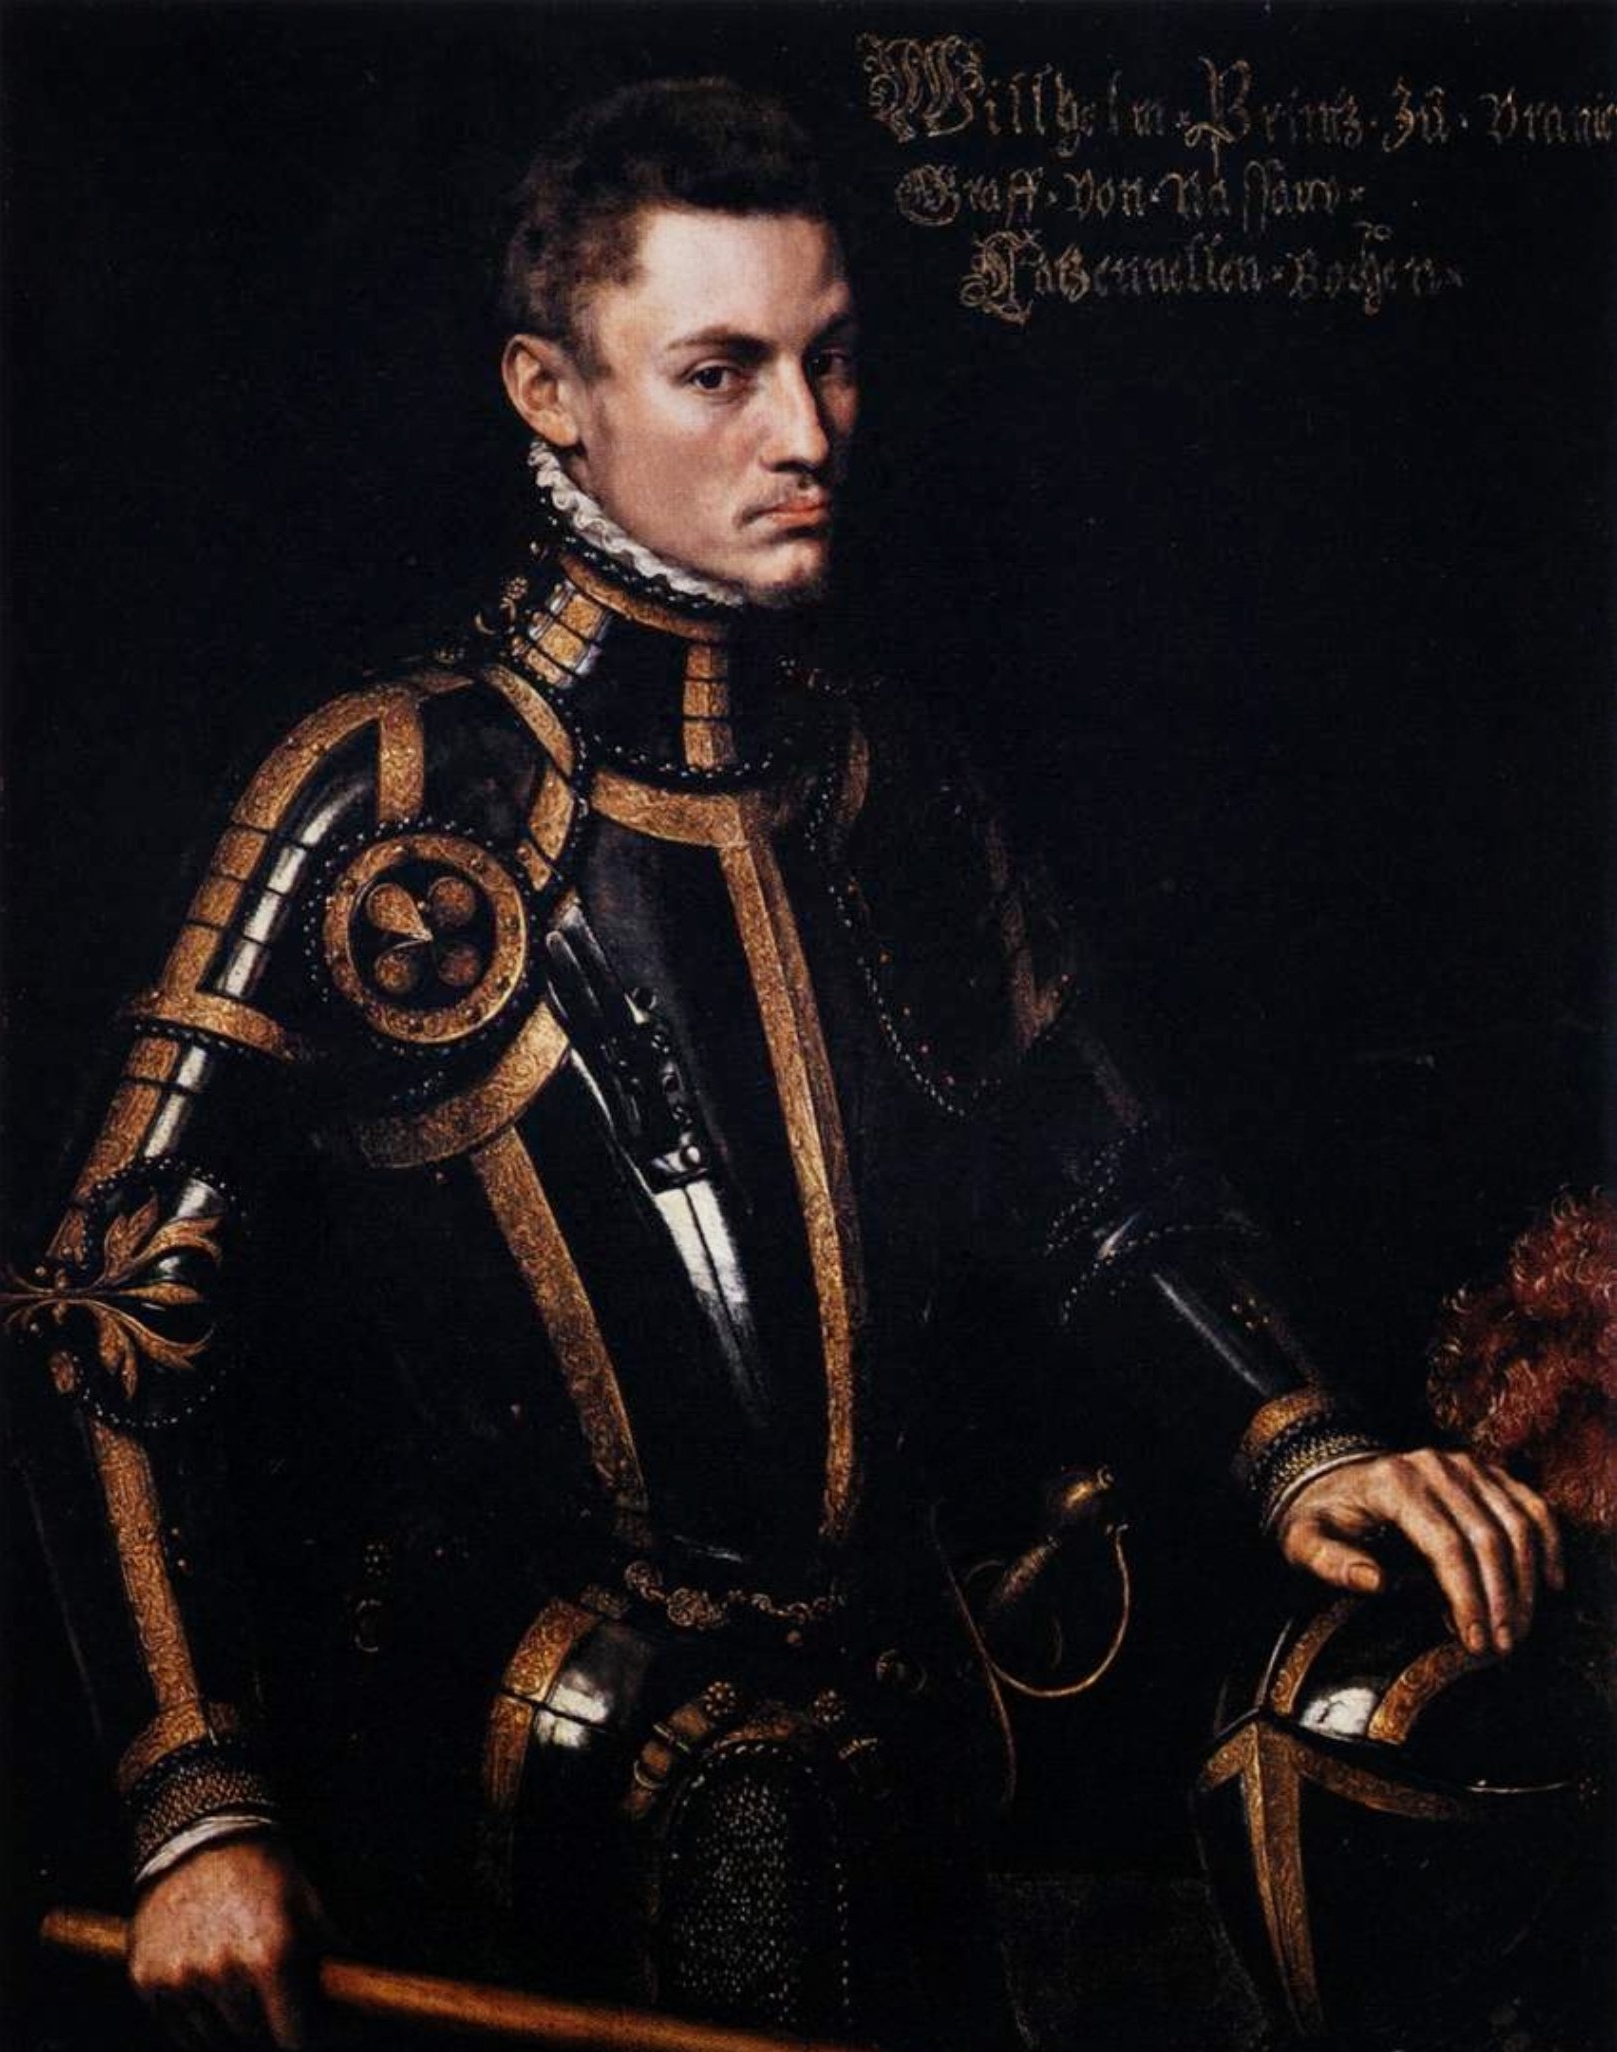 Антонис ван Дасхорст Мор. Портрет принца Вильгельма Оранского. 1555